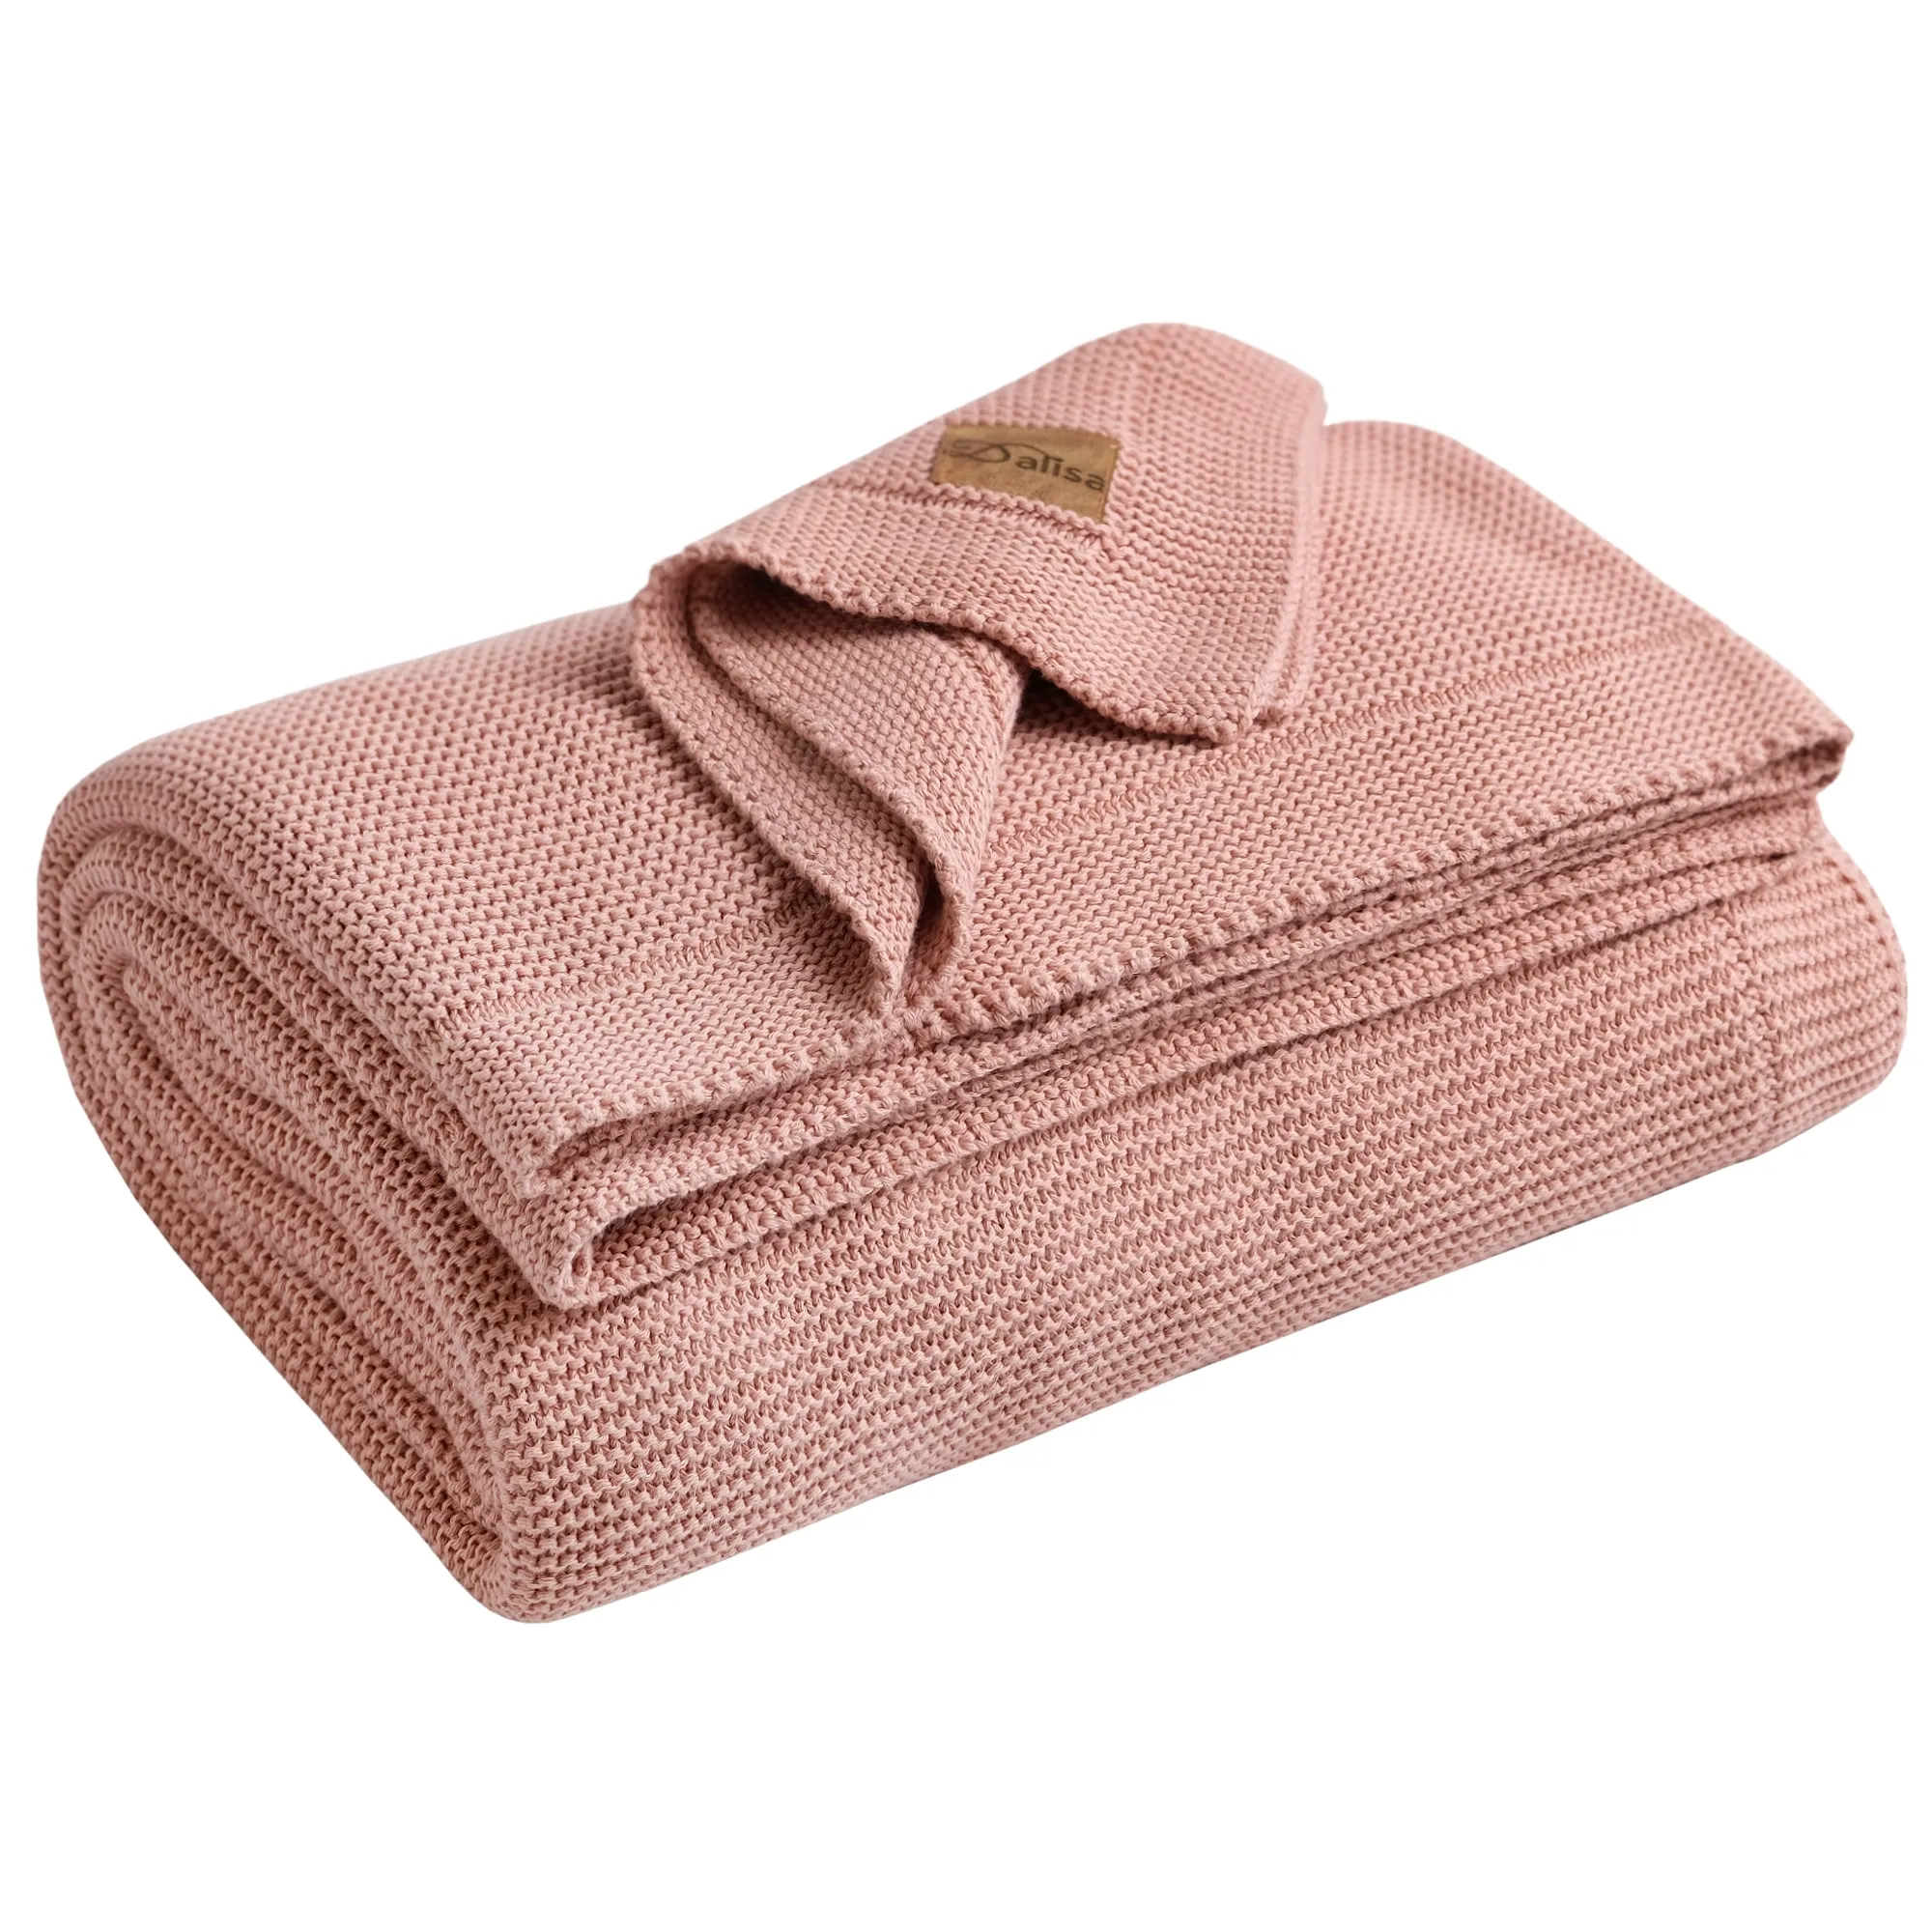 Pamuklu battaniye 115*135 Cm pembe battaniye örme en iyi fiyat Tv battaniye özel örme yatak ALINA